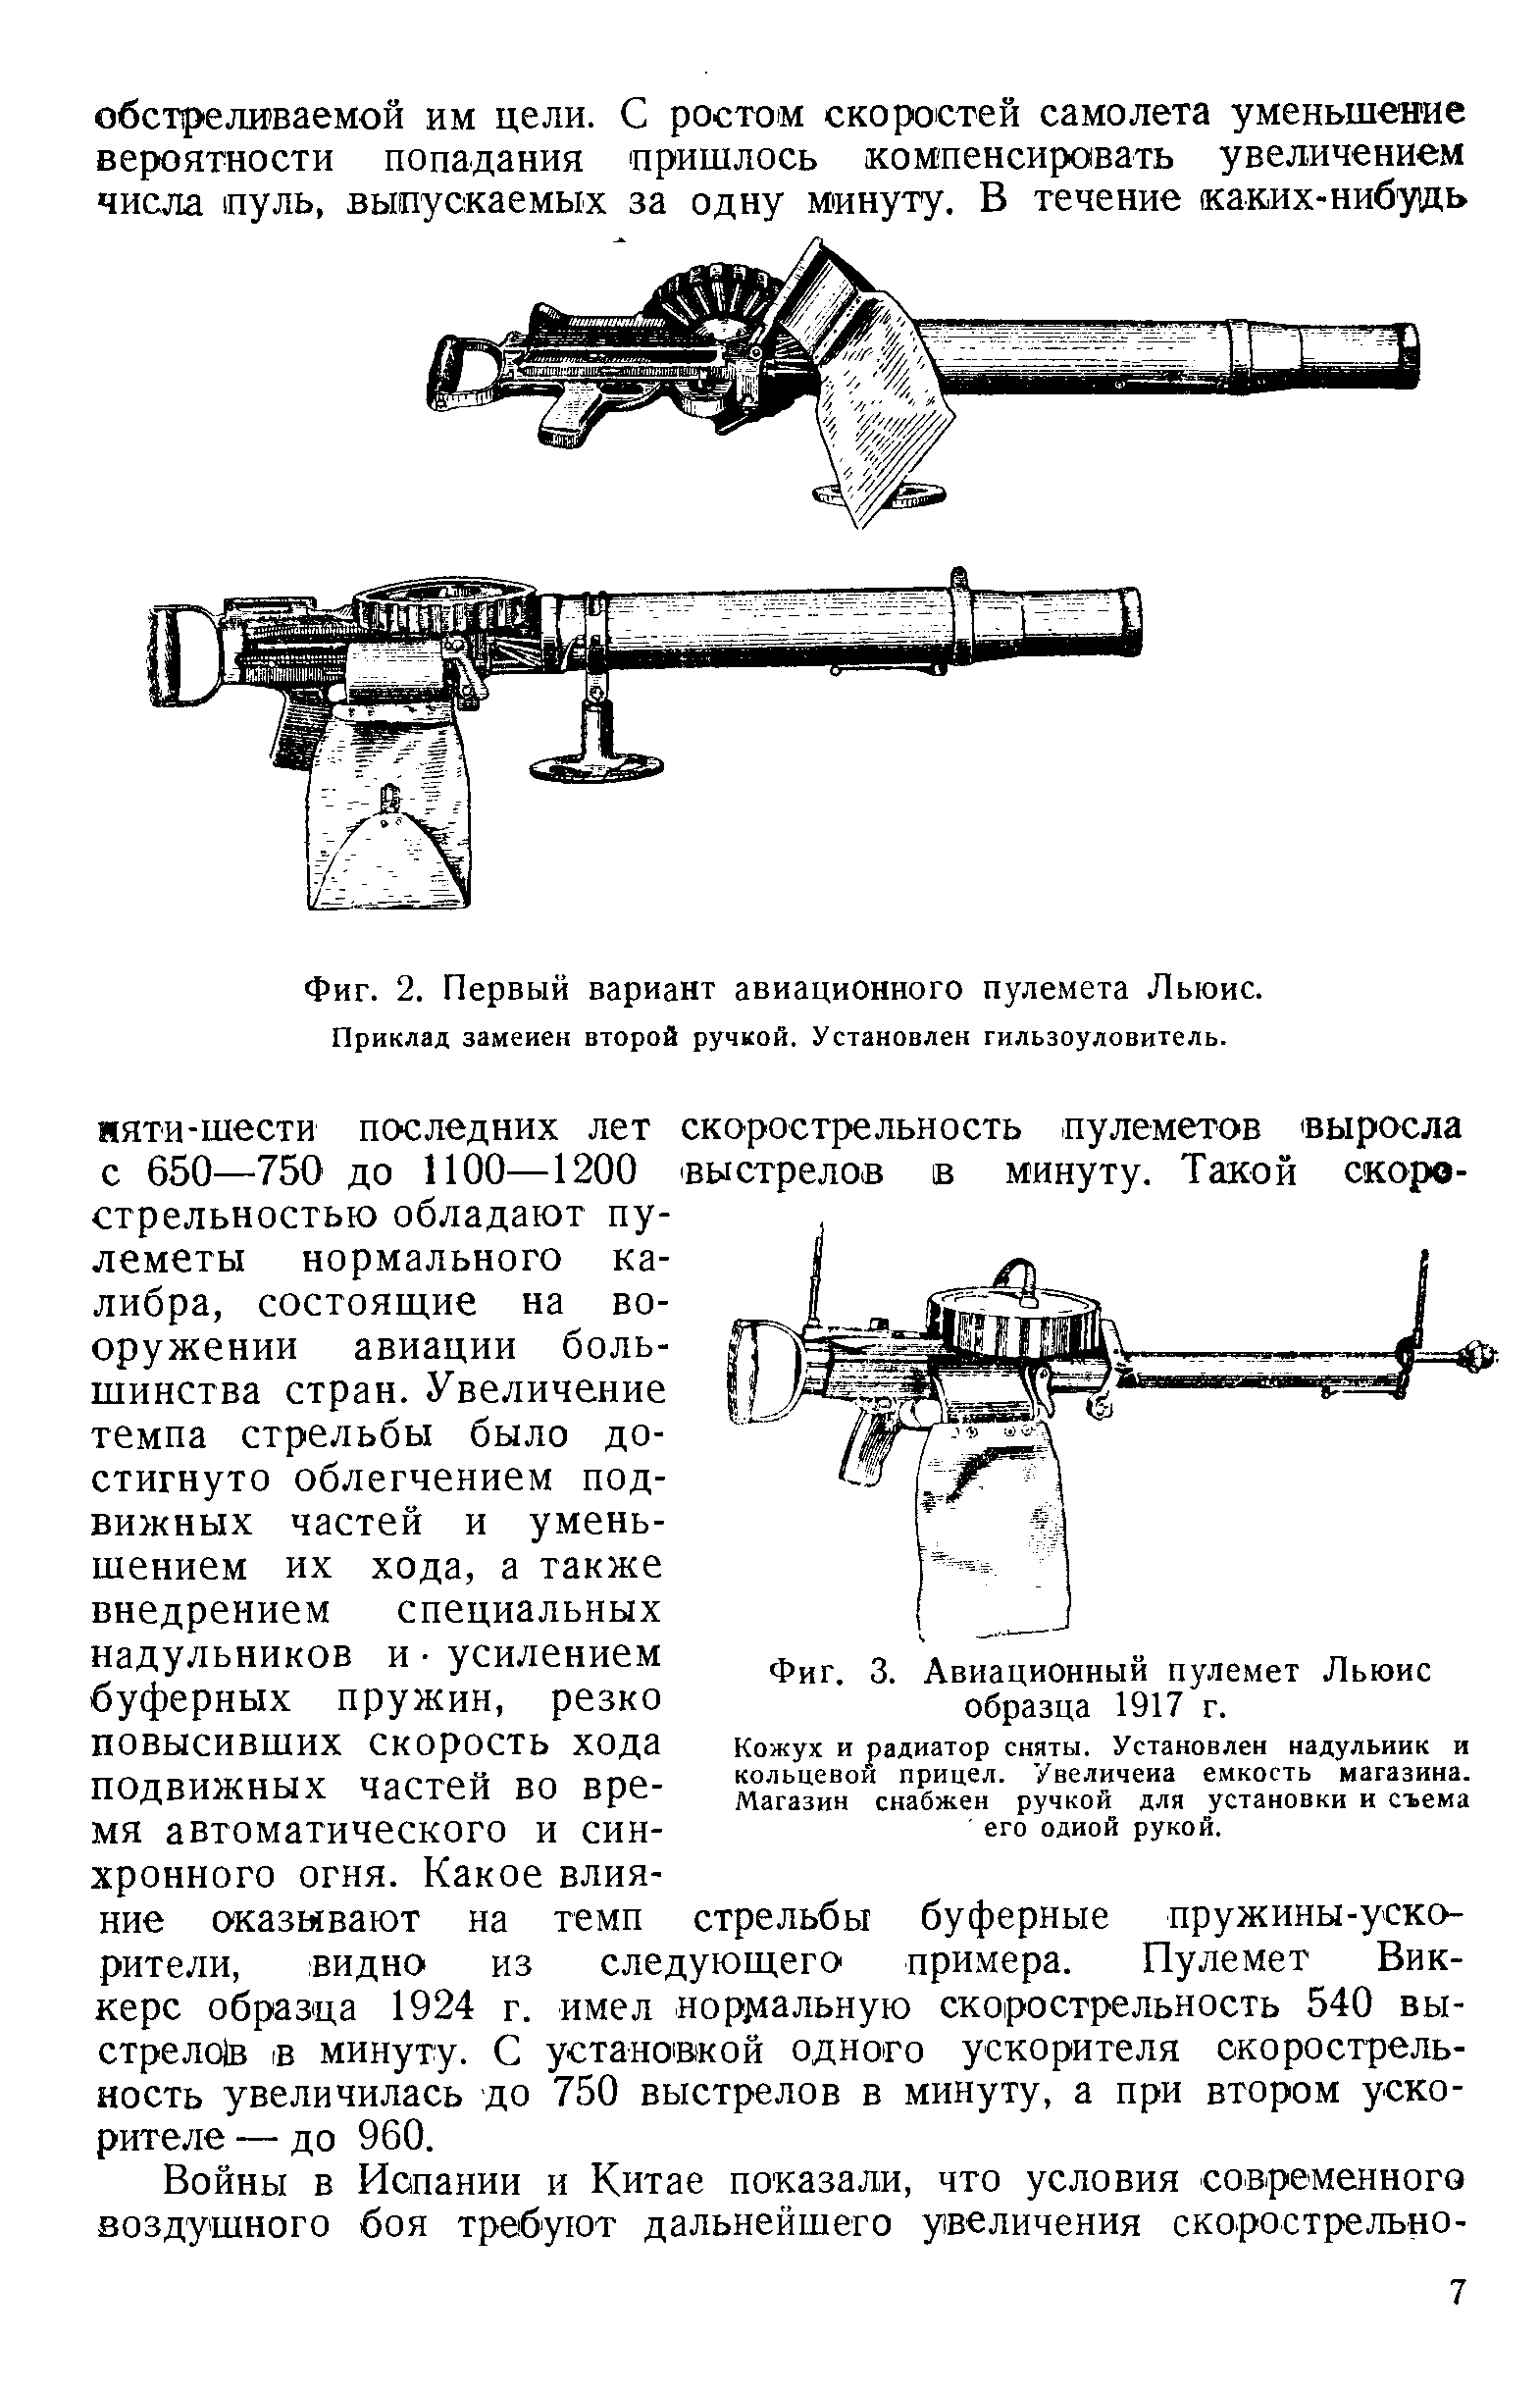 Фиг. 3. Авиационный пулемет Льюис образца 1917 г.
